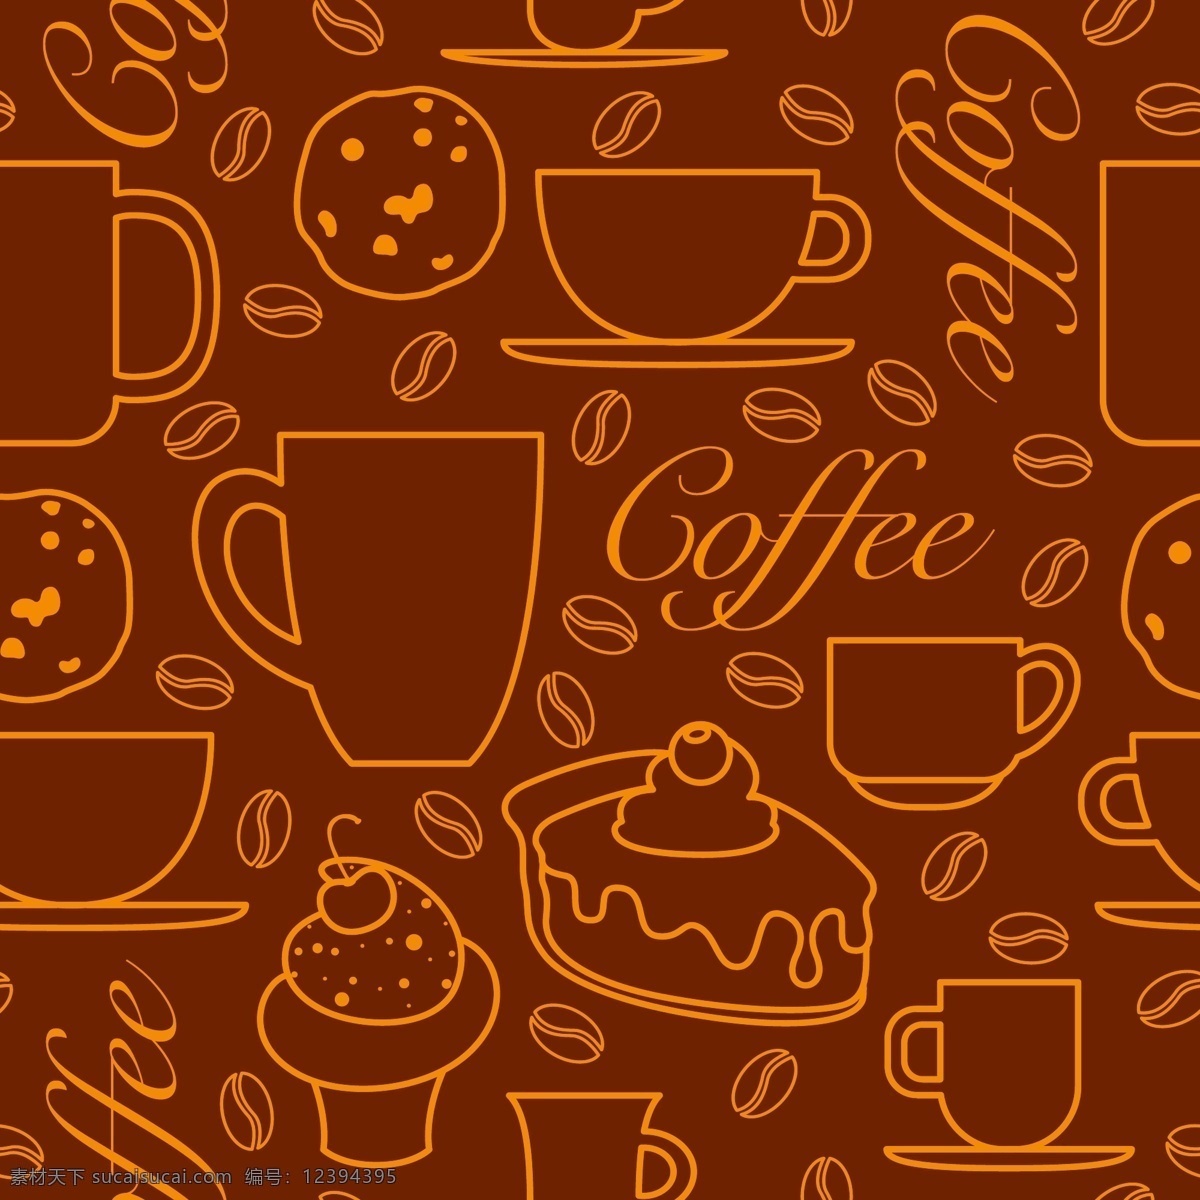 咖啡 coffee 图标 咖啡设计 咖啡图标 咖啡标志 咖啡豆 咖啡店 咖啡元素 咖啡店图标 logo 咖啡商标 标志 vi icon 小图标 图标设计 logo设计 标志设计 标识设计 矢量设计 其他图标 标志图标